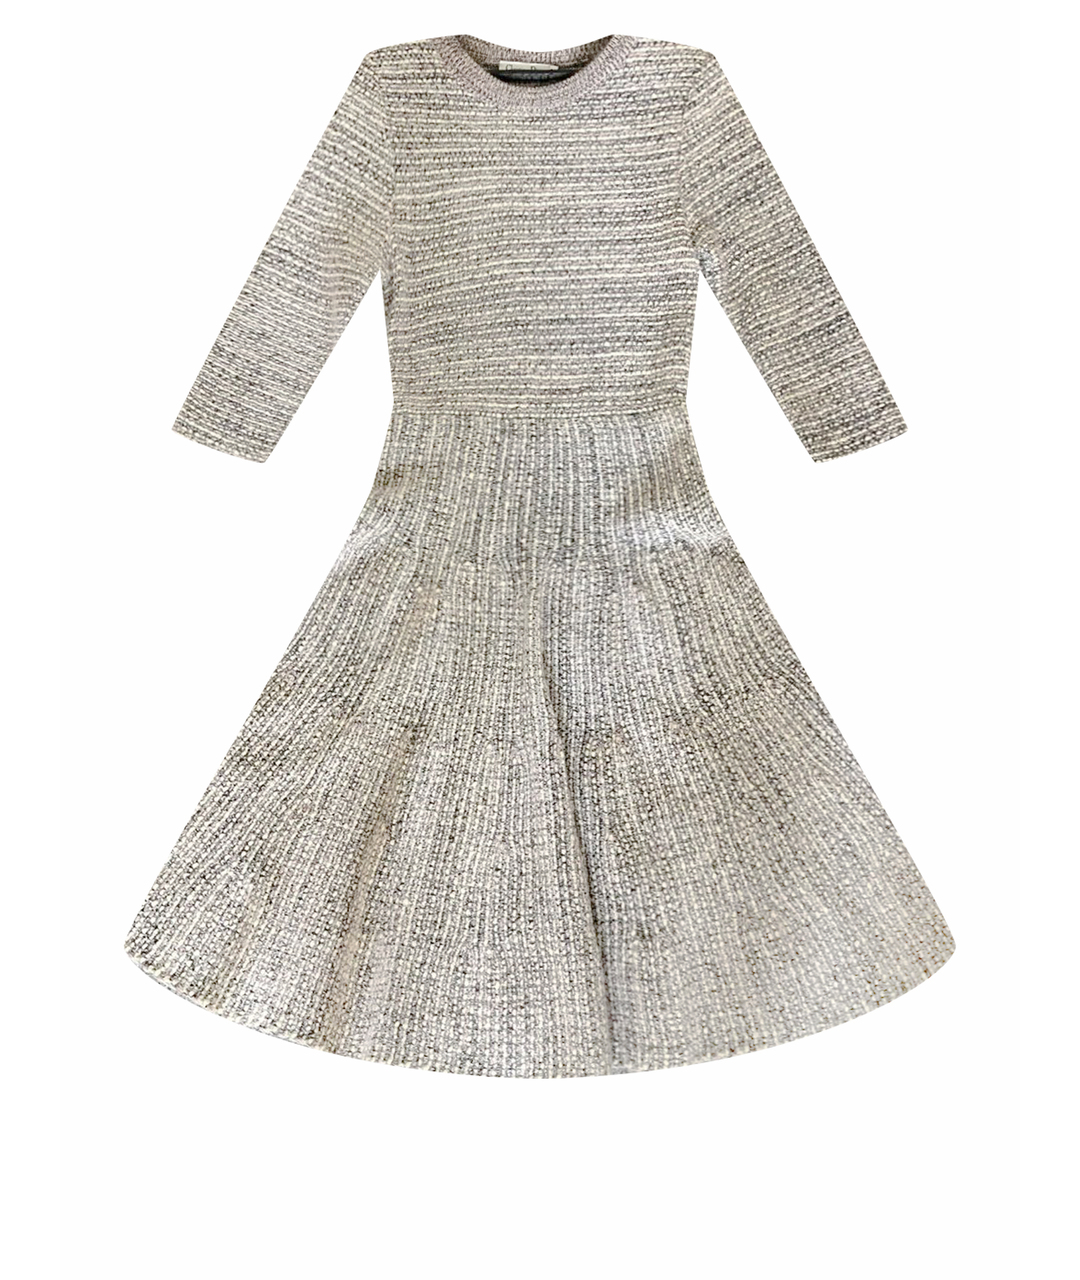 CHRISTIAN DIOR PRE-OWNED Серое шерстяное повседневное платье, фото 1